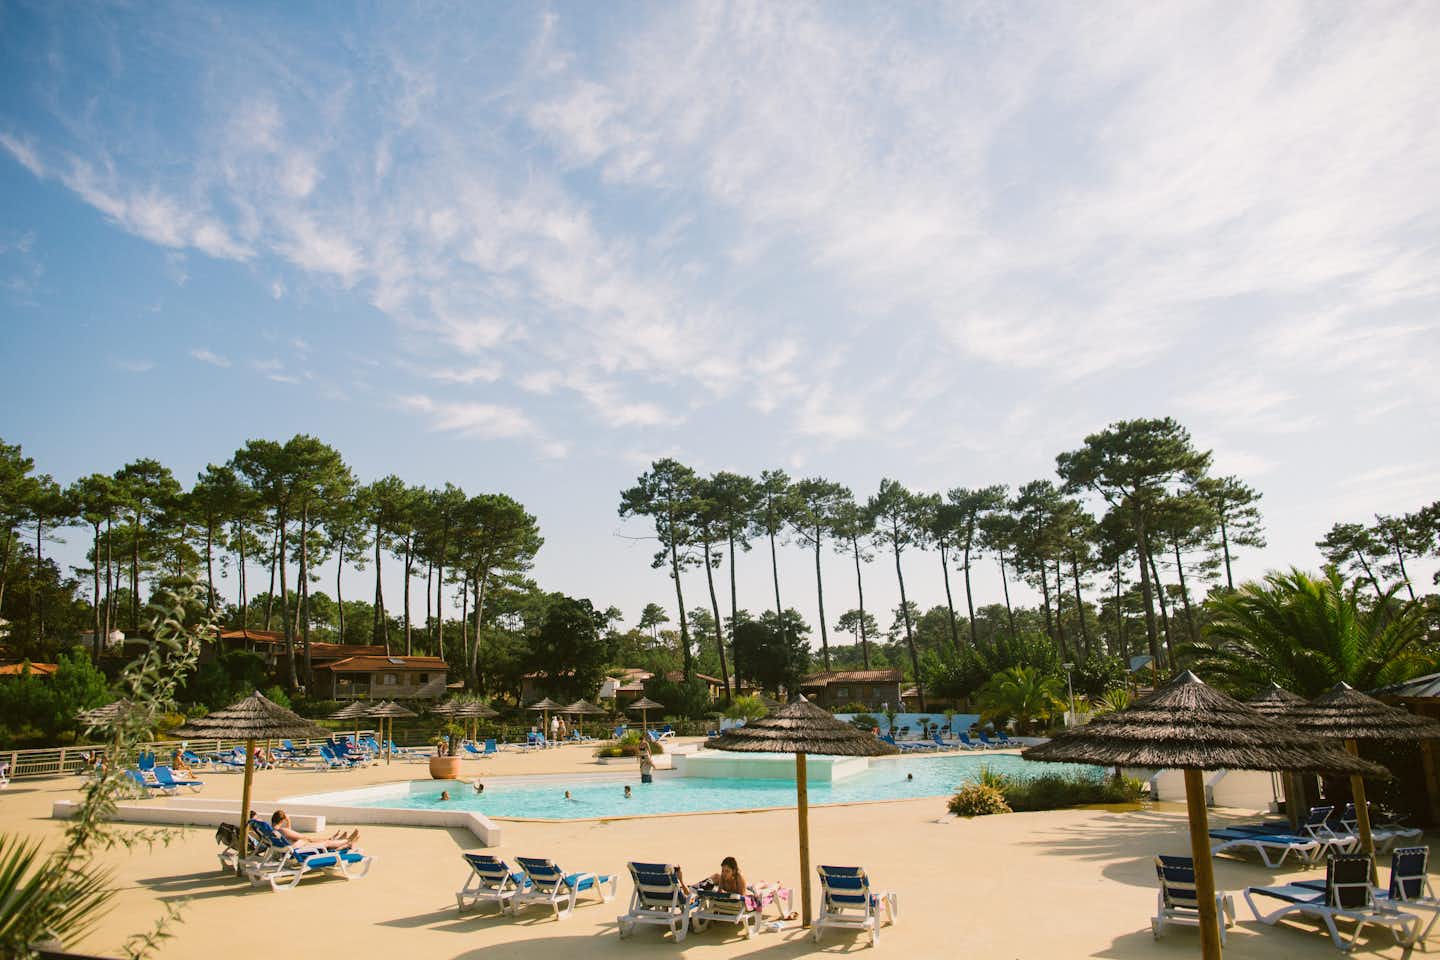 Naturéo Seignosse - Campingplatz mit Pool, Liegestühlen und Sonnenschirmen